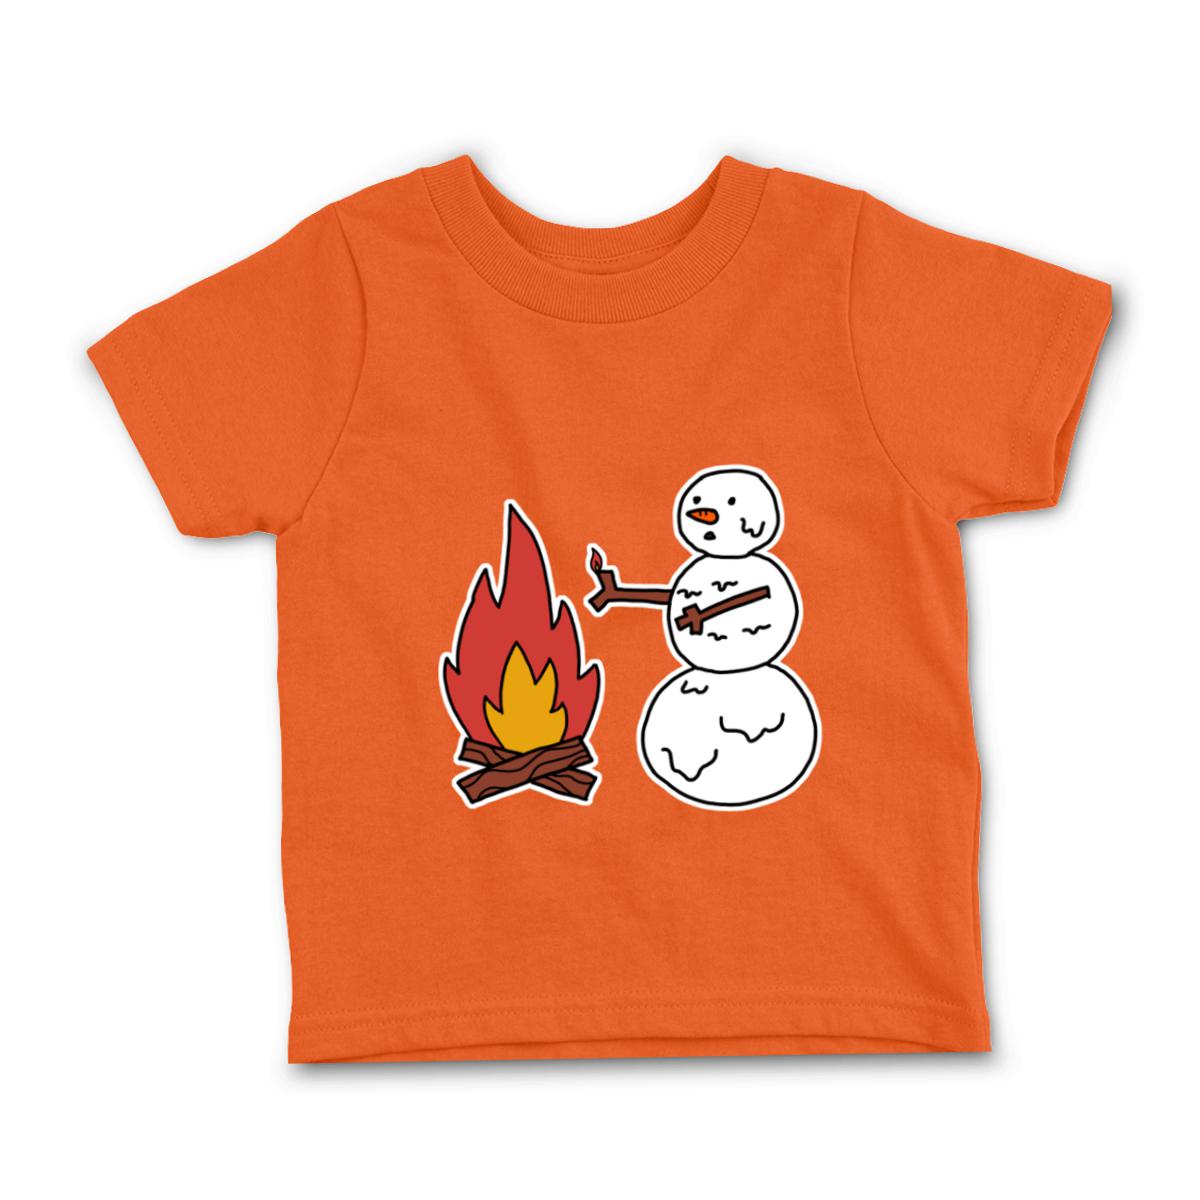 Snowman Keeping Warm Toddler Tee 56T orange